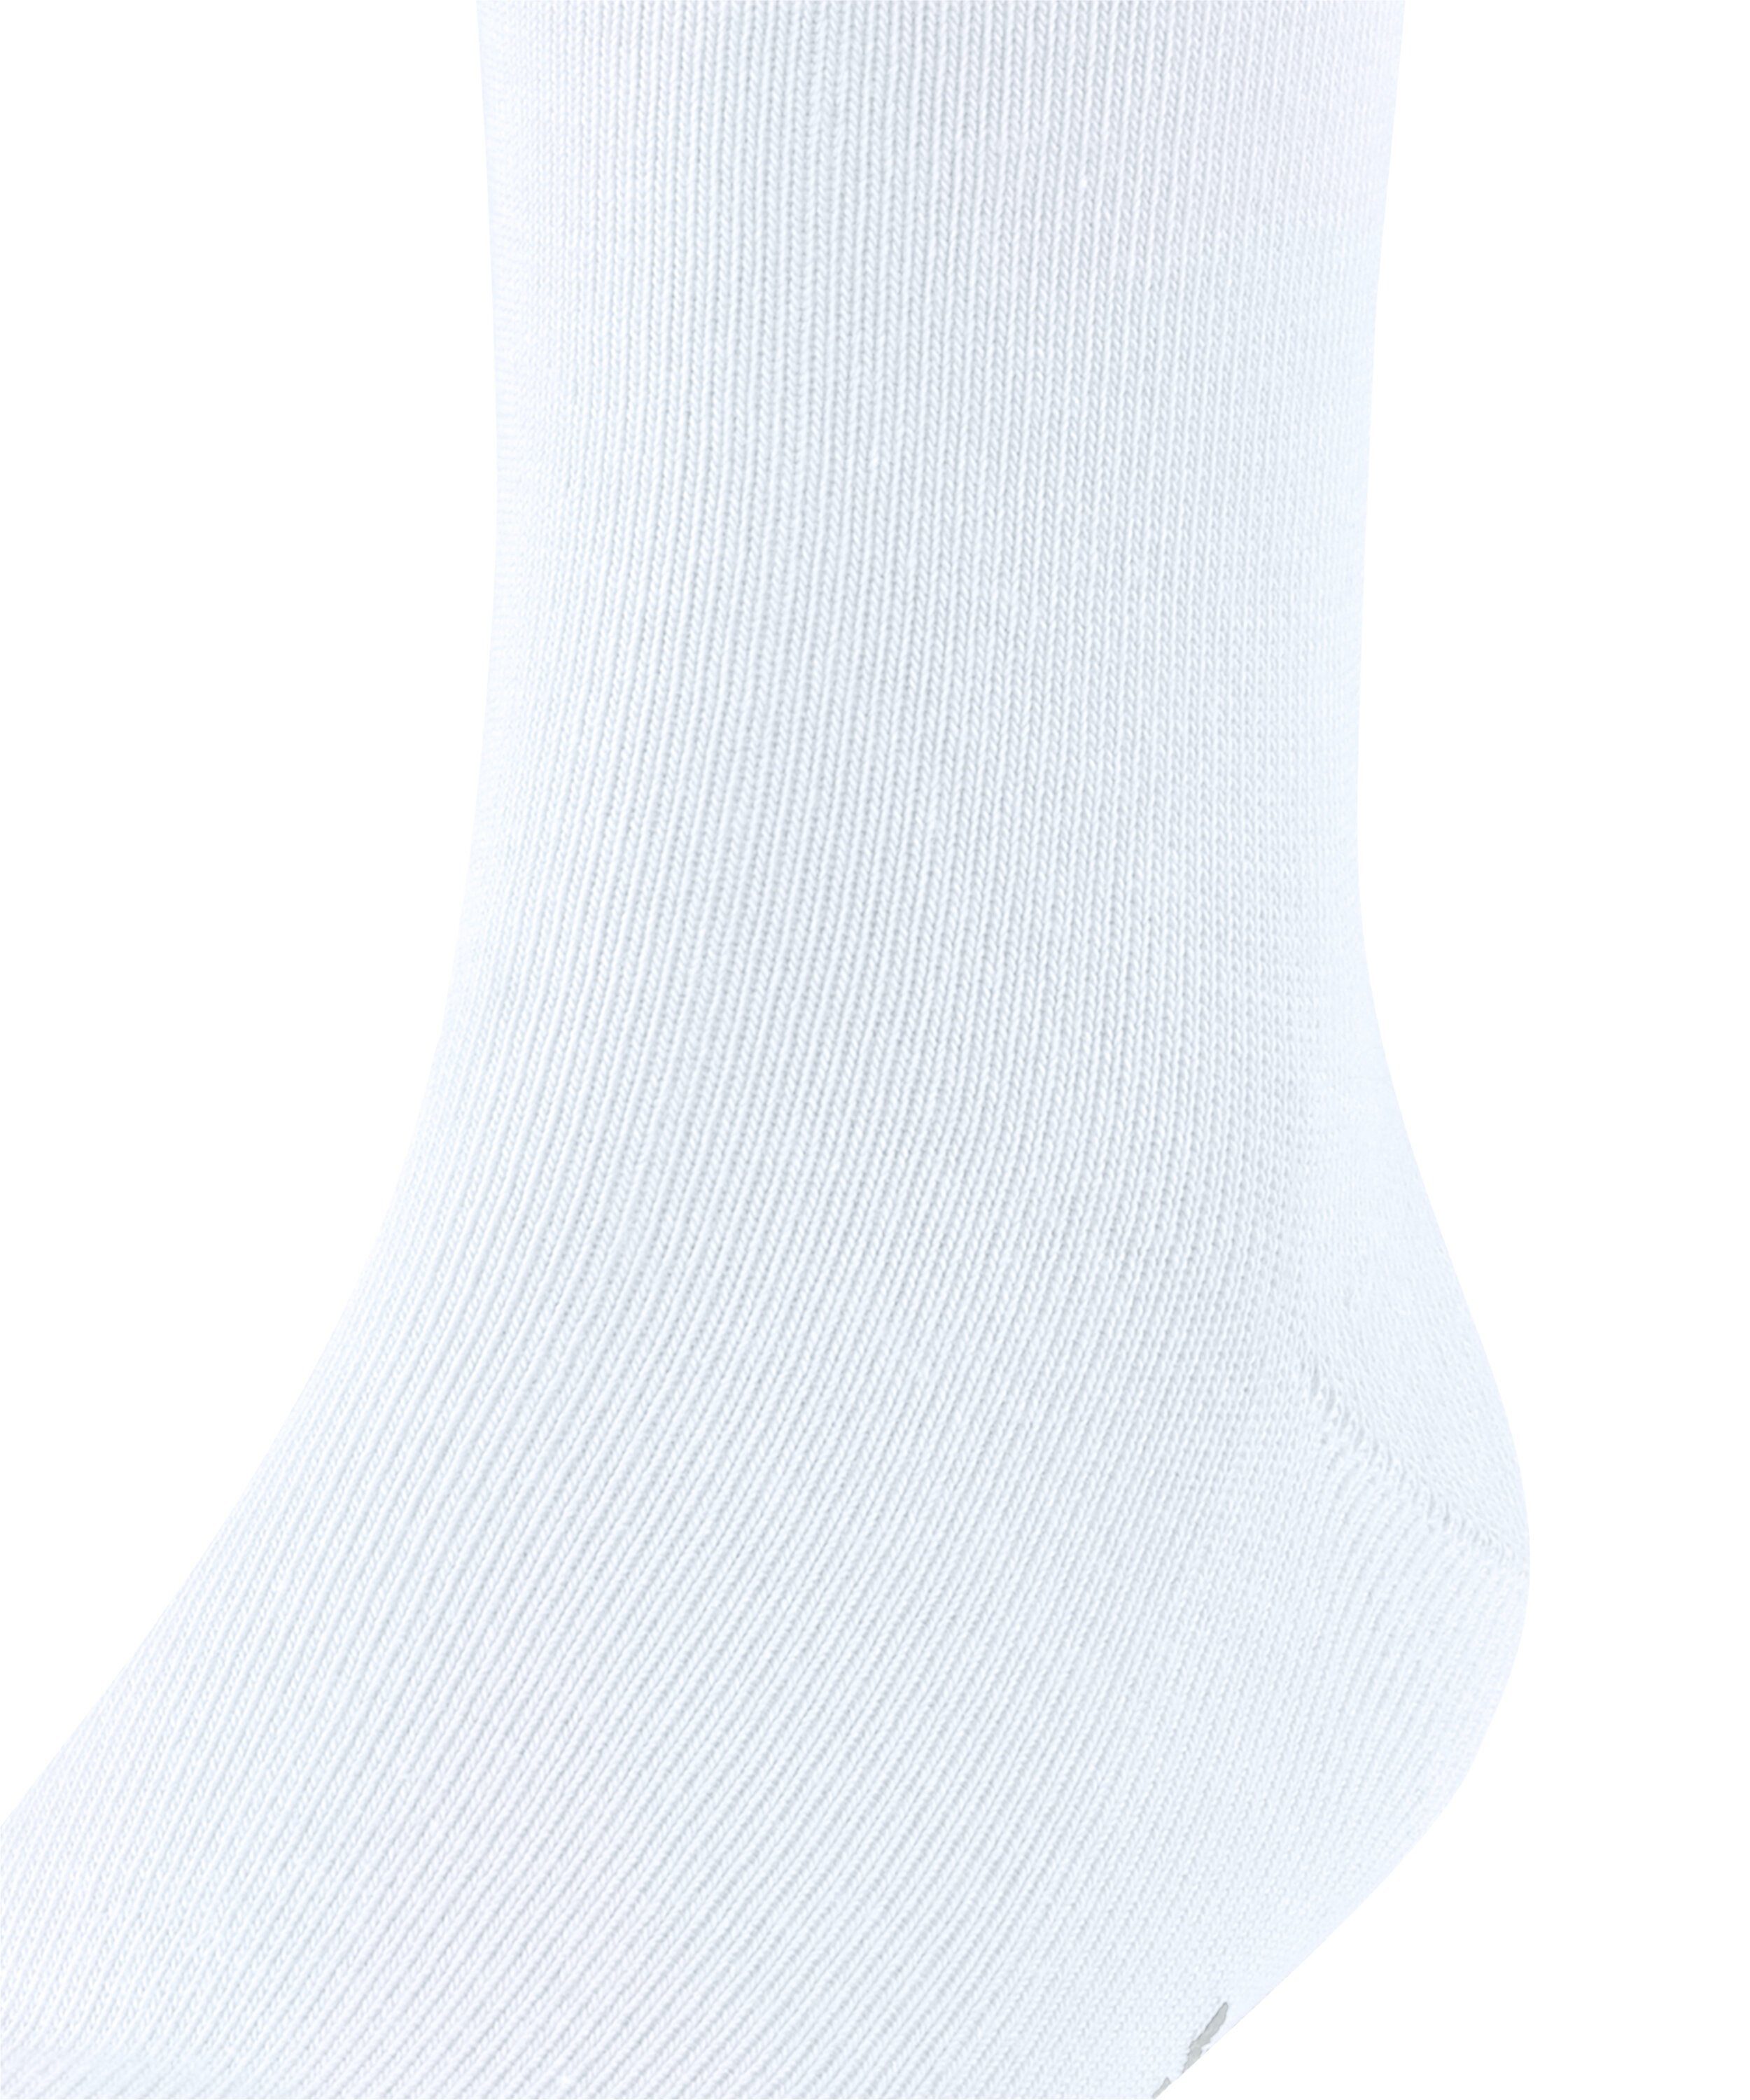 Socken (1-Paar) Family FALKE (2000) white